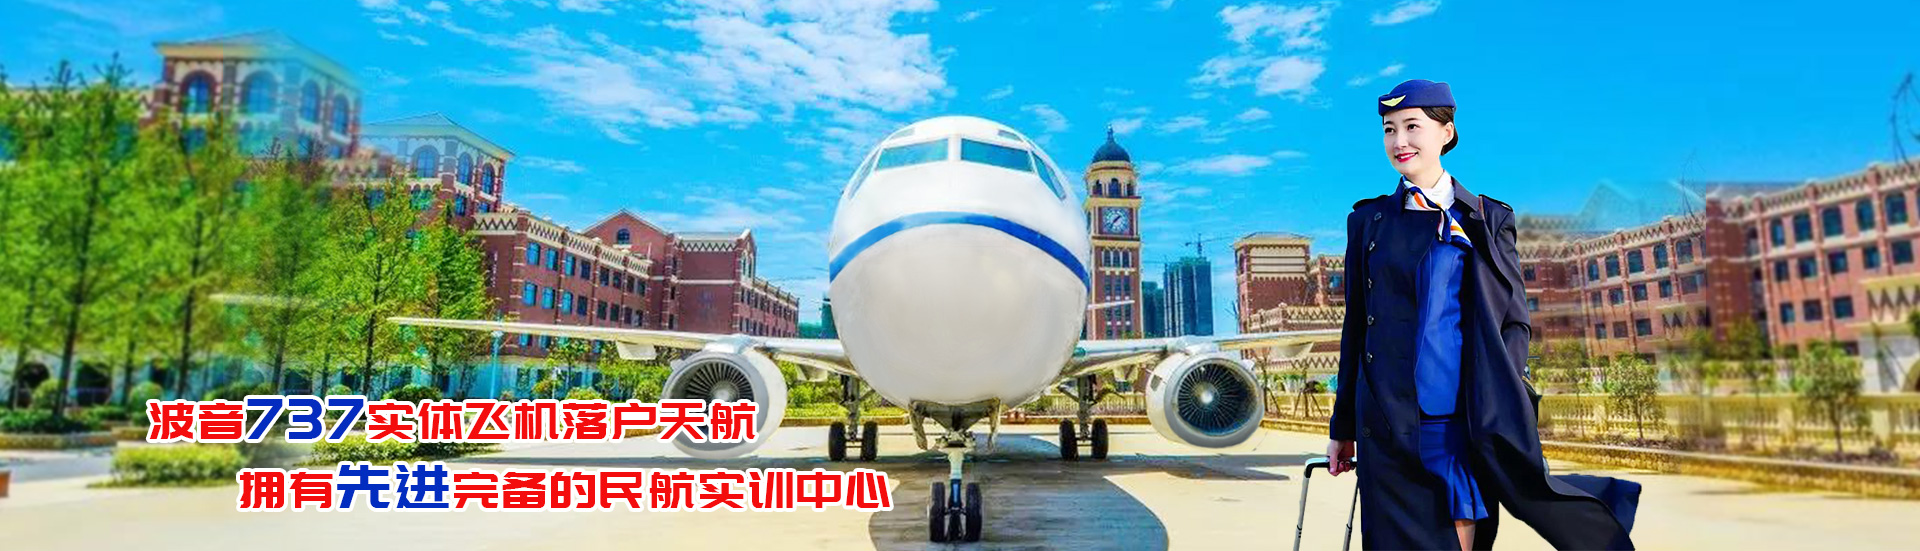 重庆航空专业